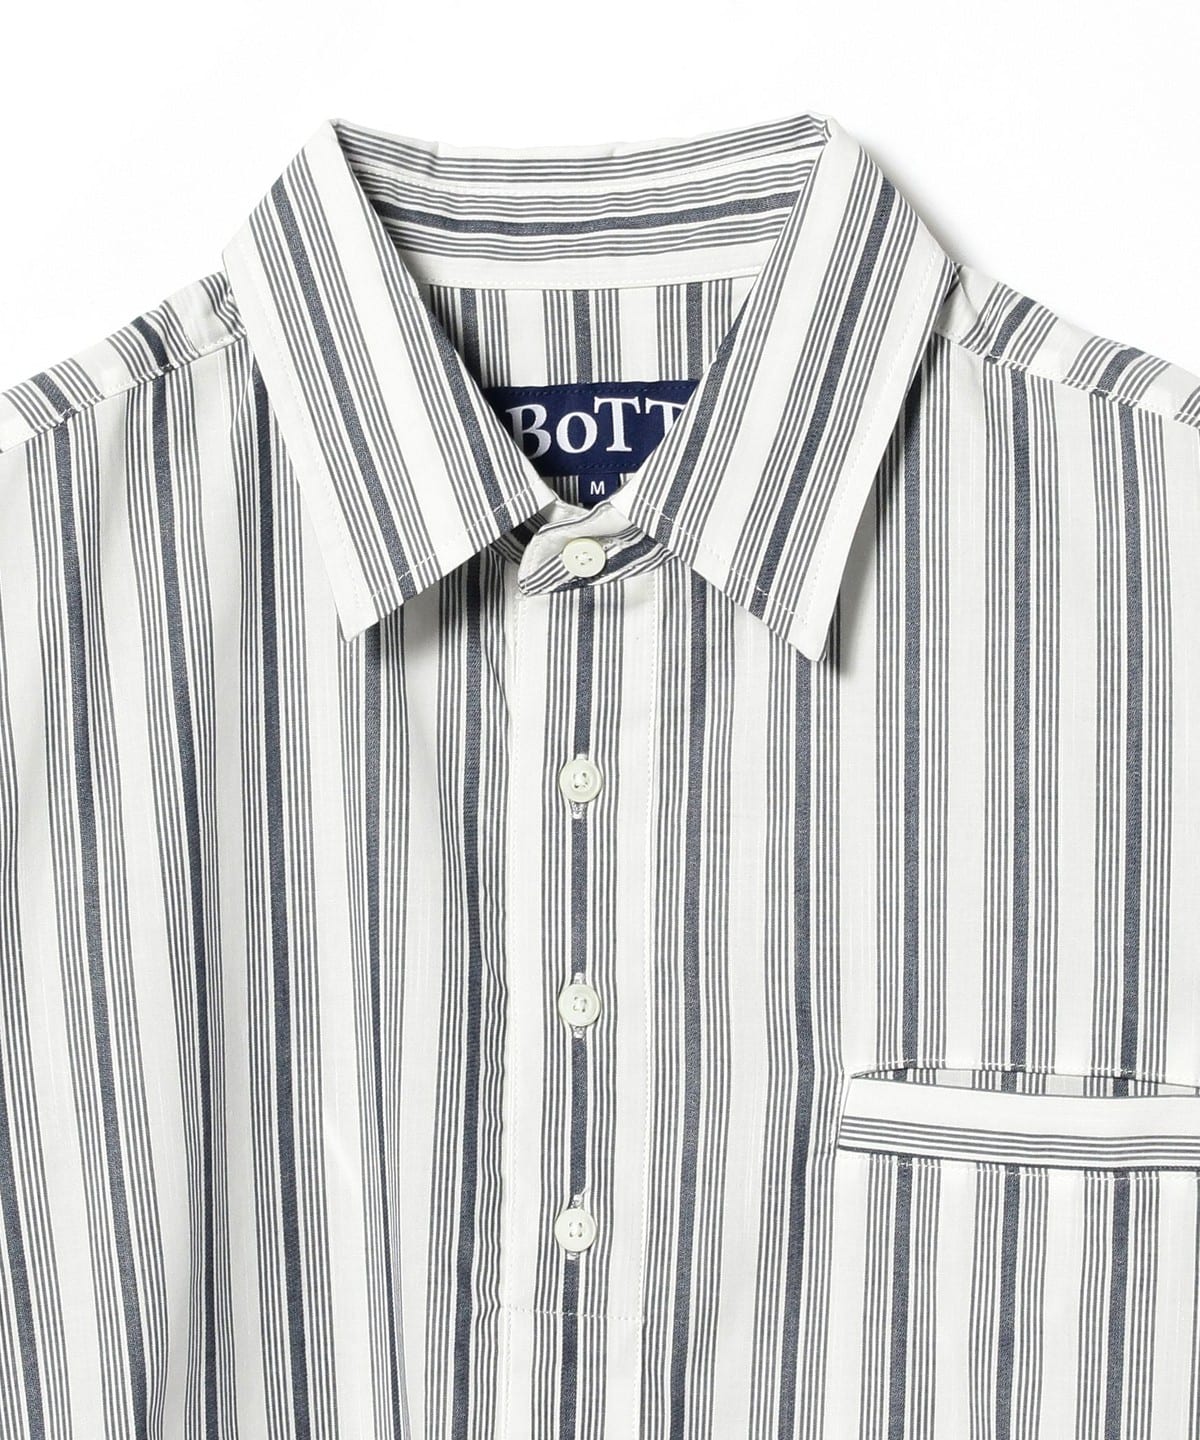 bott stripe pullover shirt ストライプシャツ L